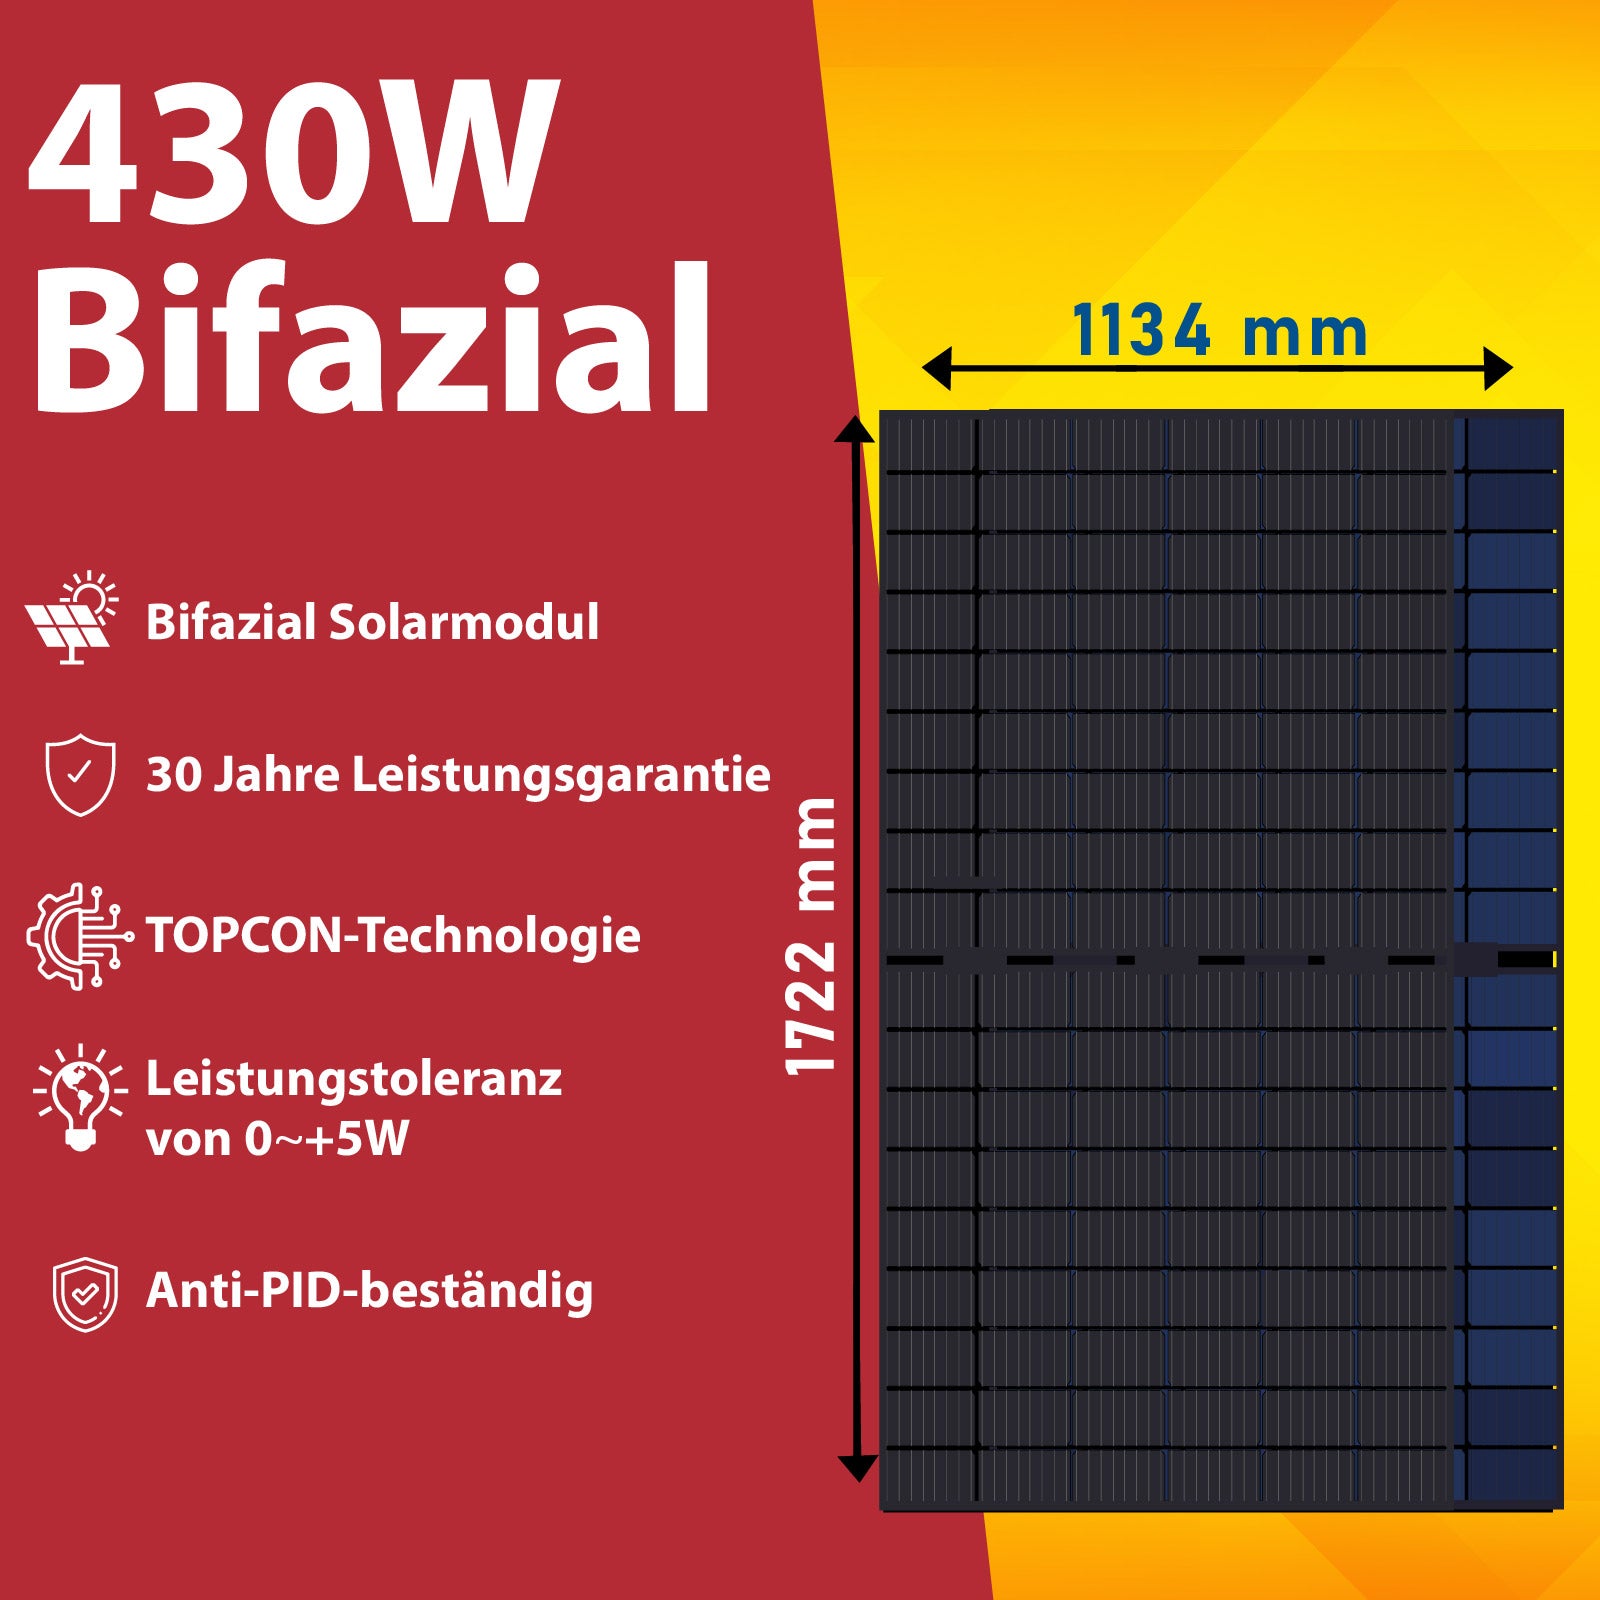 860W Balkonkraftwerk Komplettset mit 430W Bifaziale Solarpanele, 800W Wechselrichter